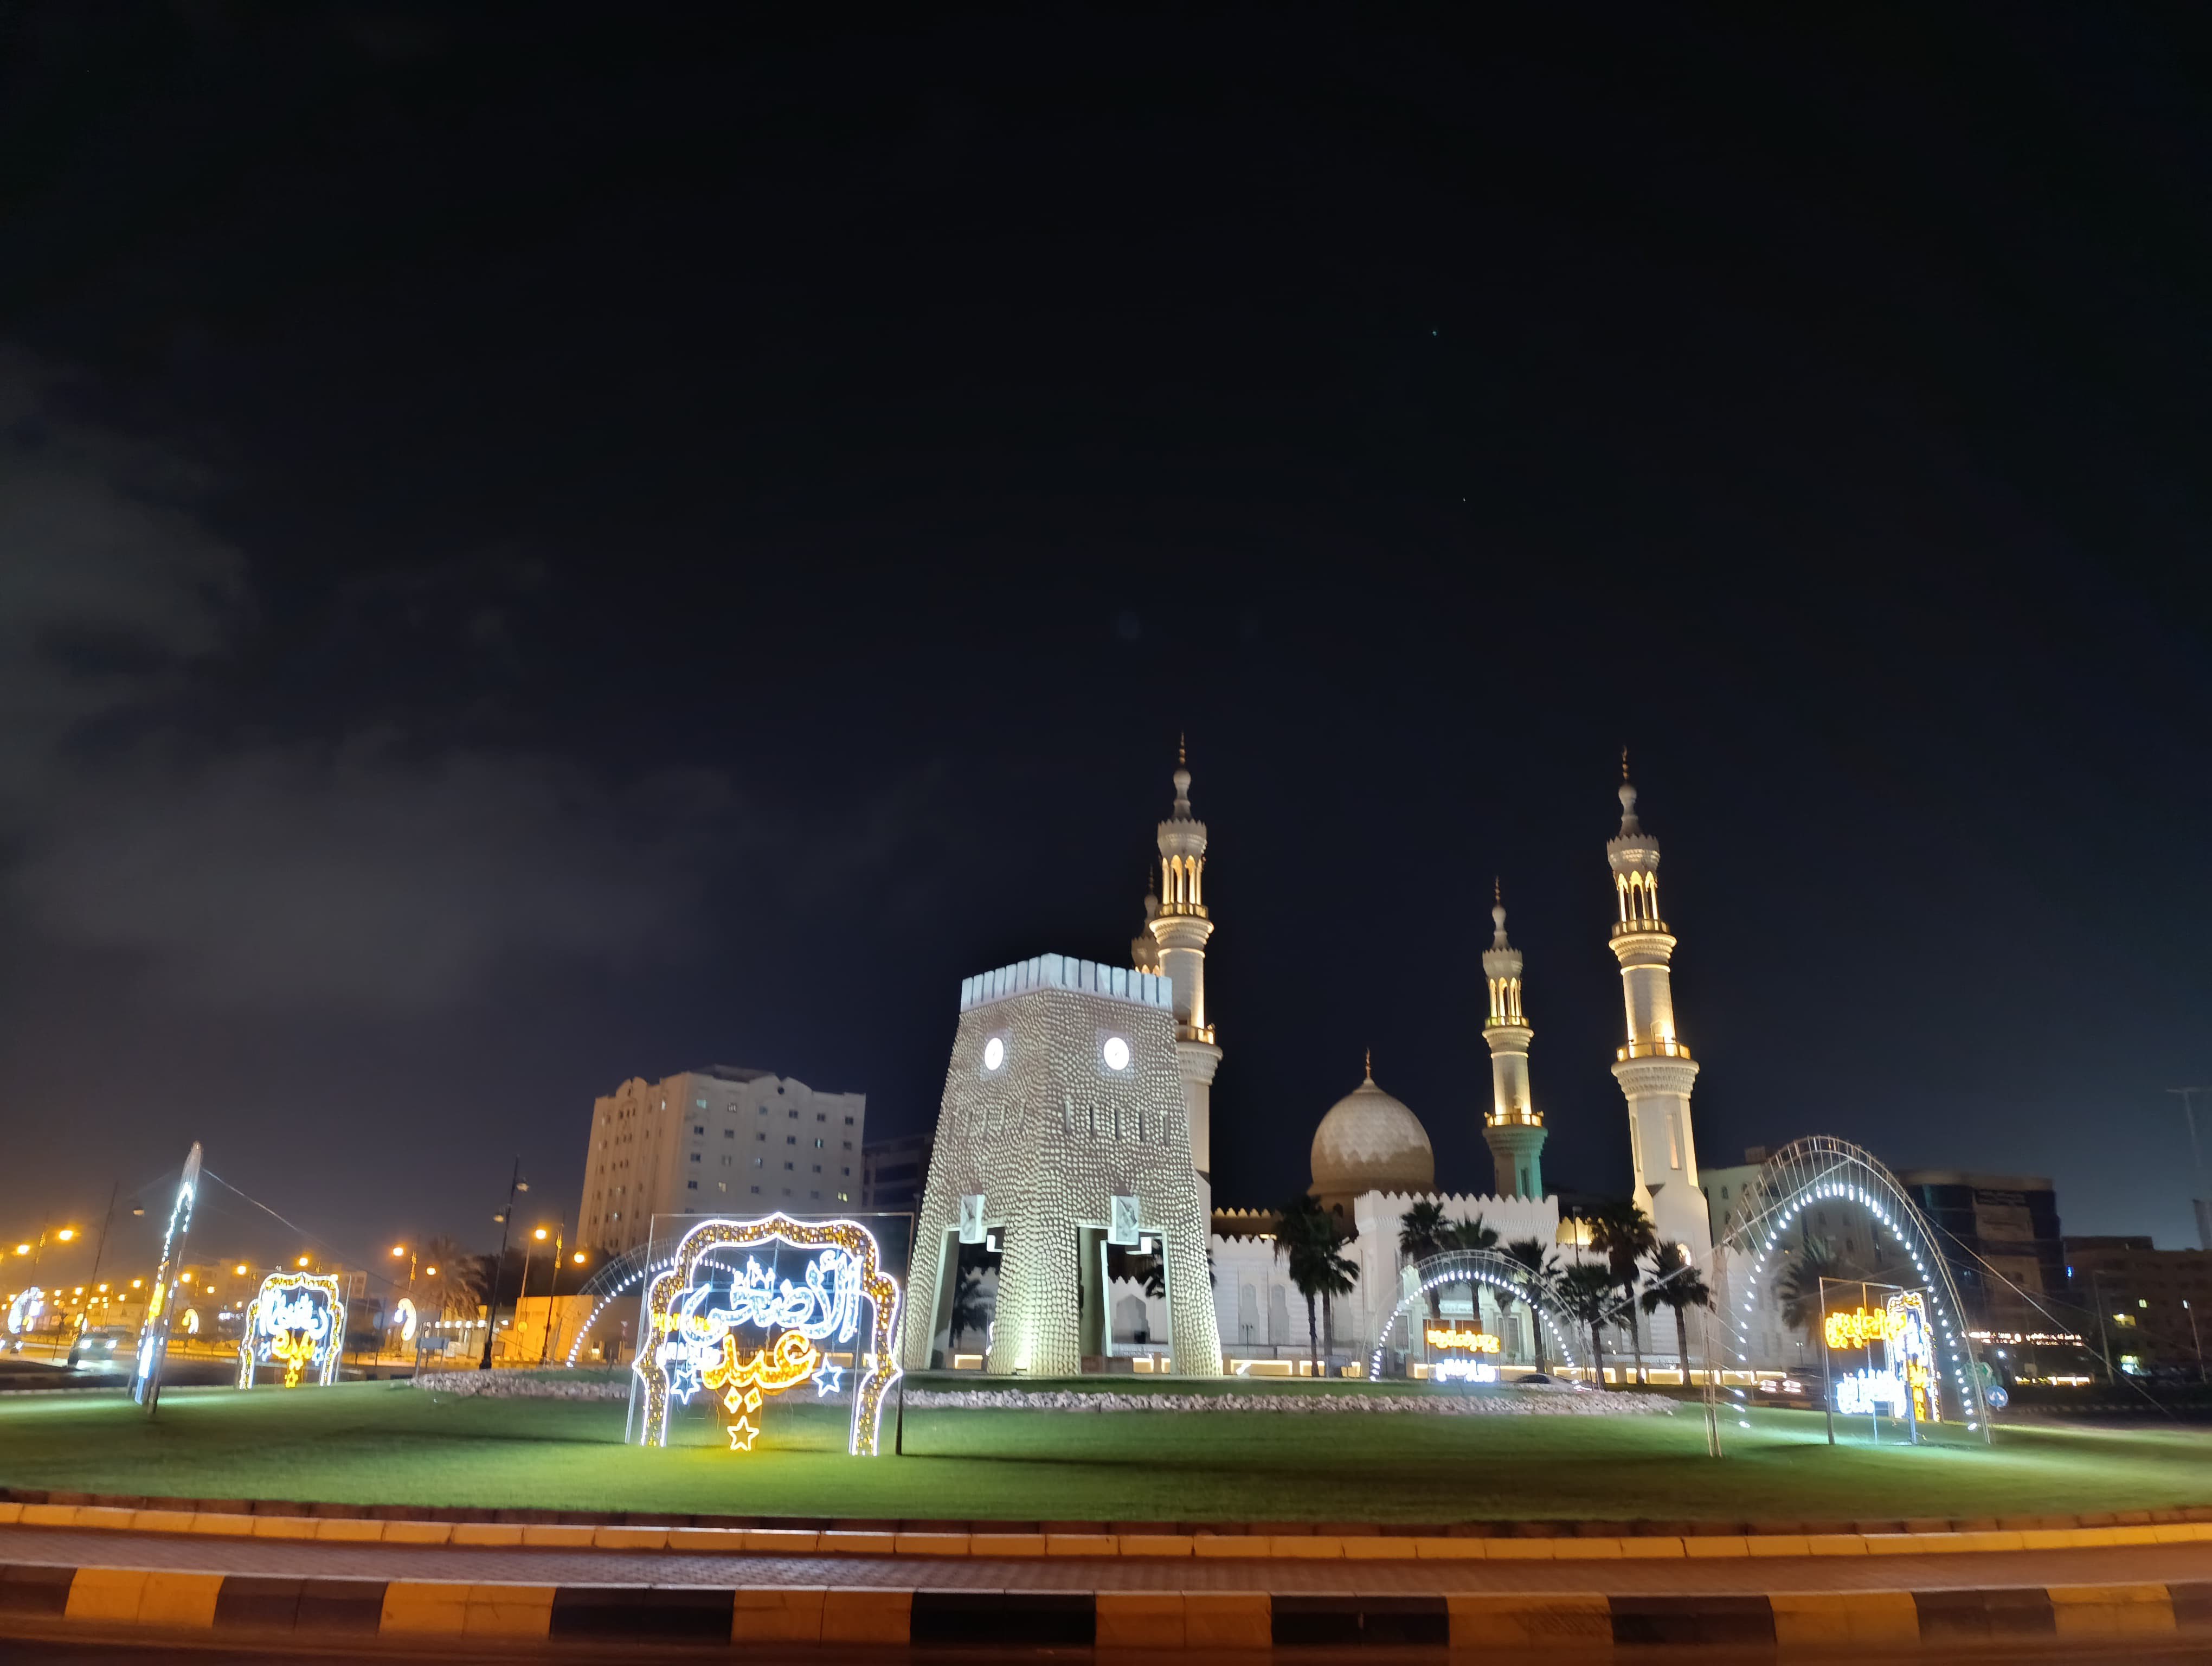 بلدية دبا الفجيرة تكمل استعداداتها لاستقبال عيد الأضحى